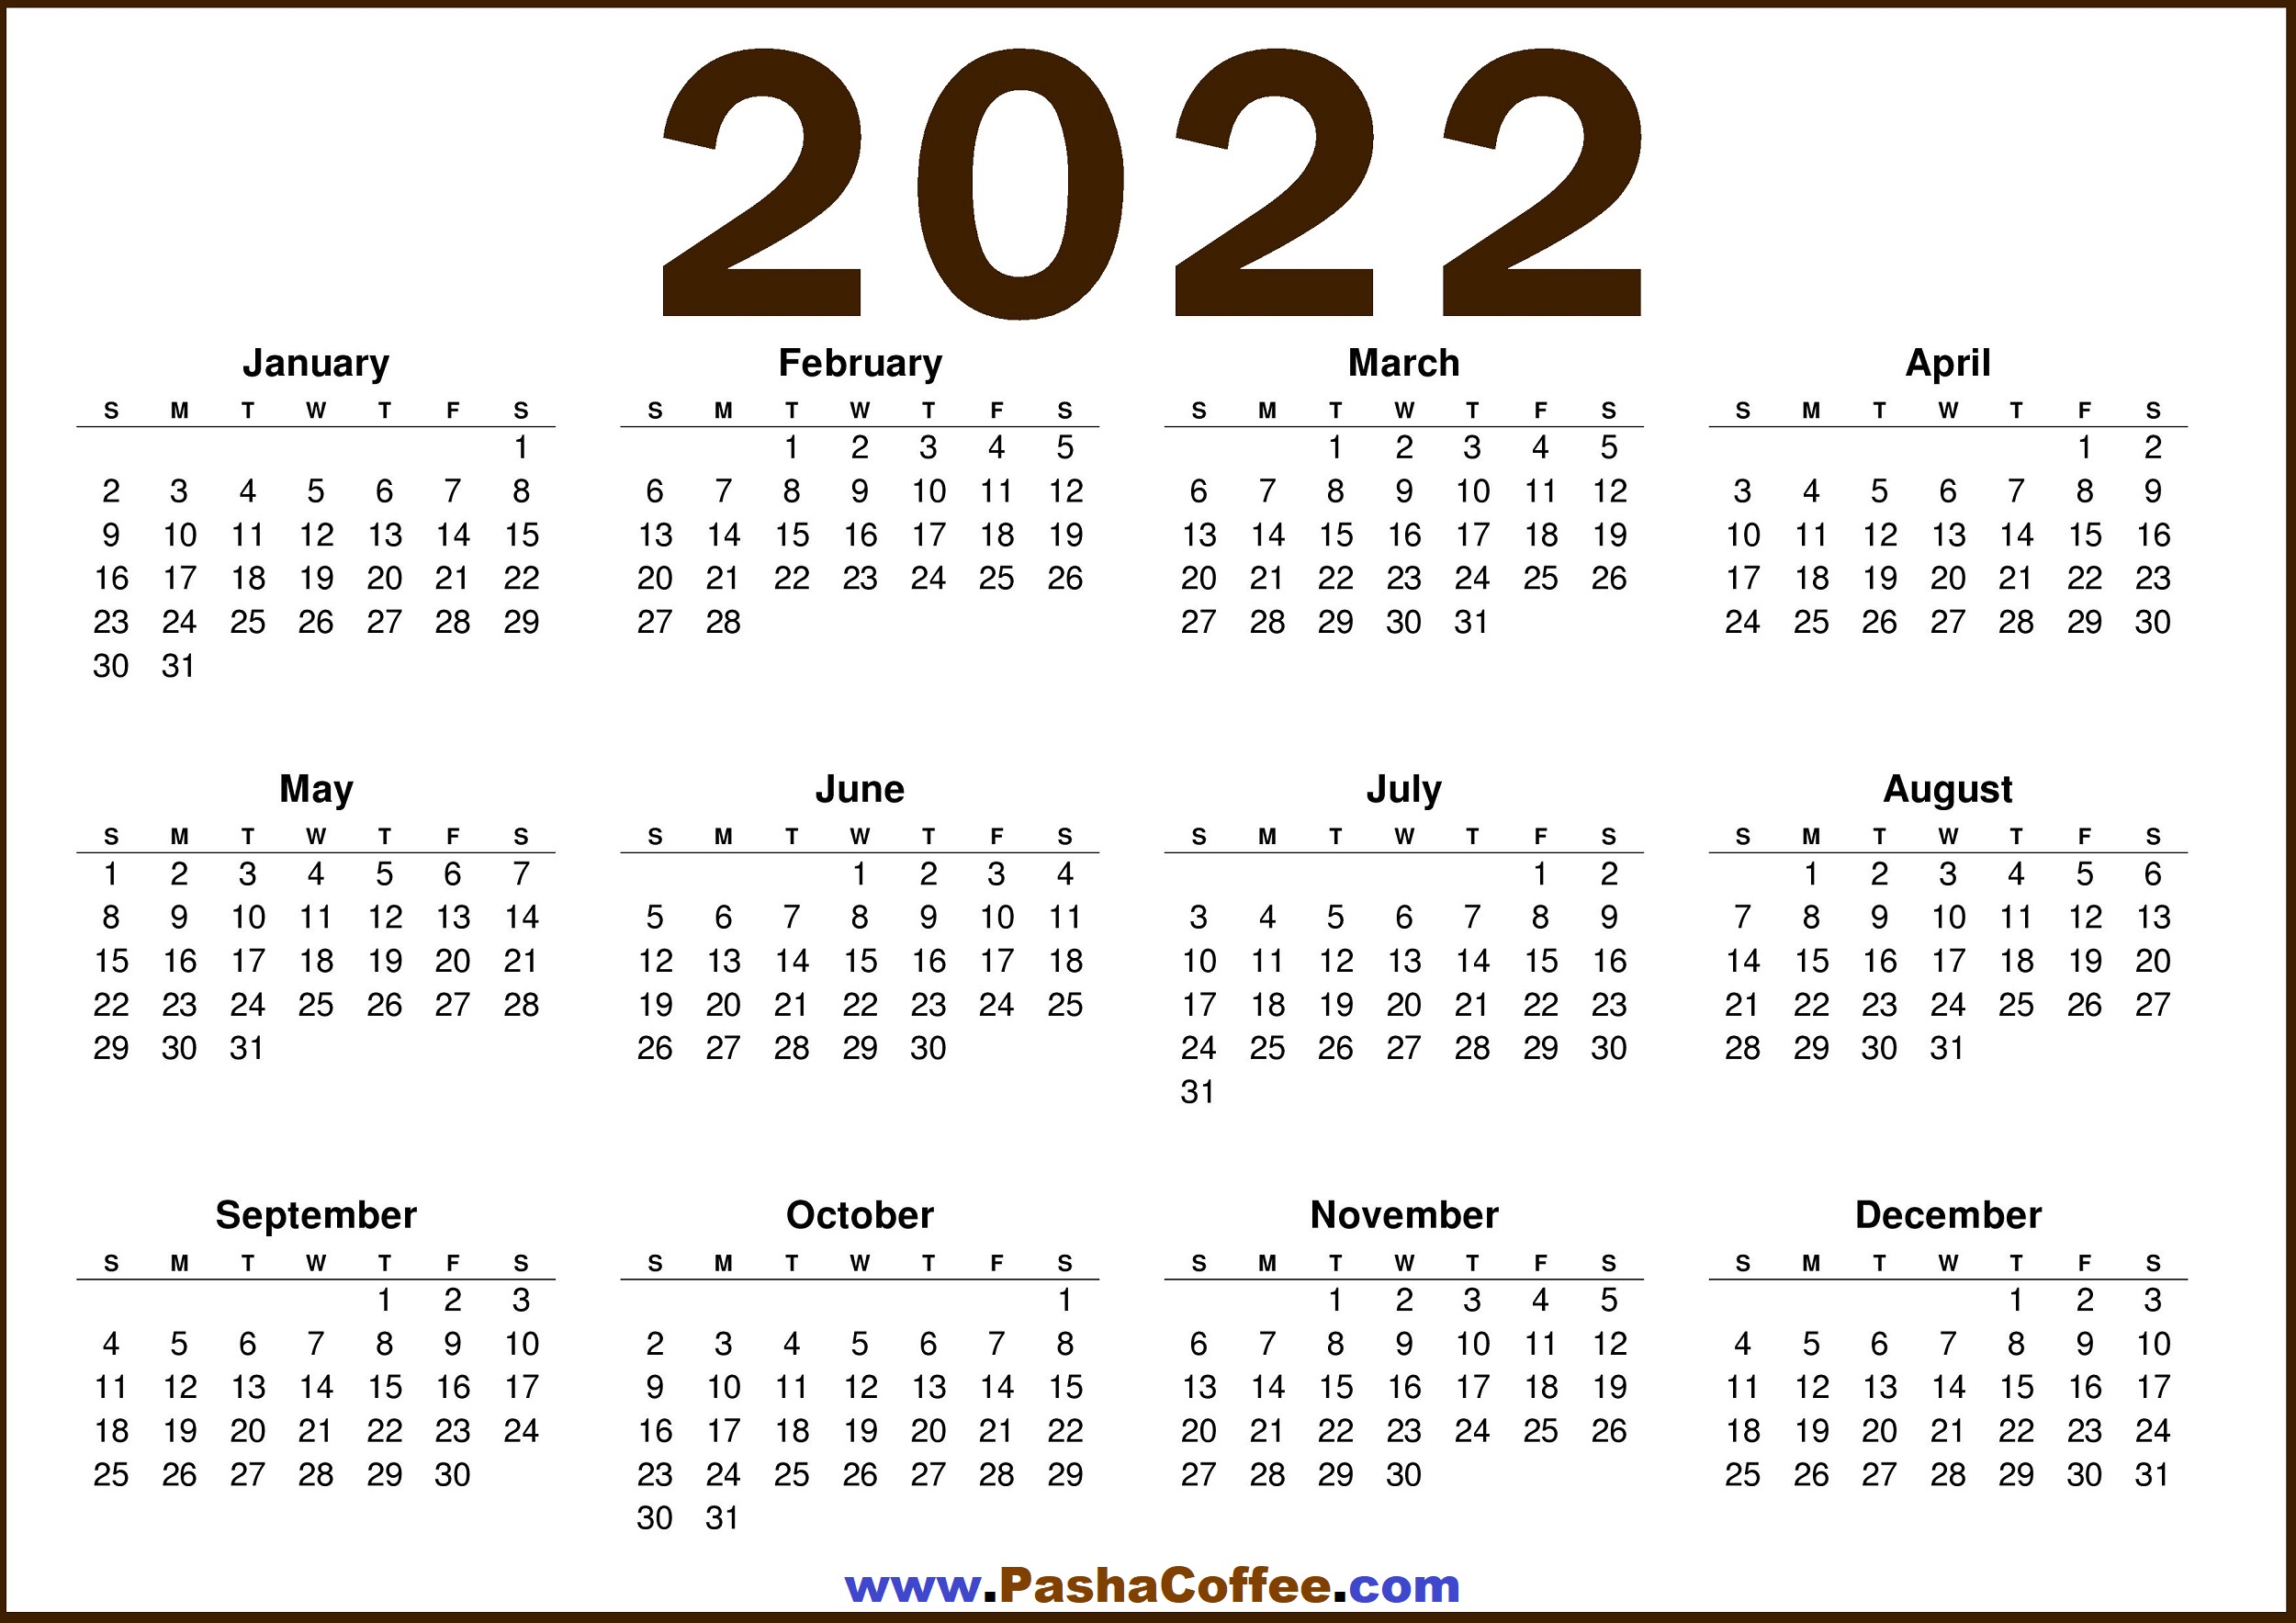 Free Downloadable Calendar 2022 2022 Calendar Us – Free Printable 2022 Calendar – Pashacoffee.com